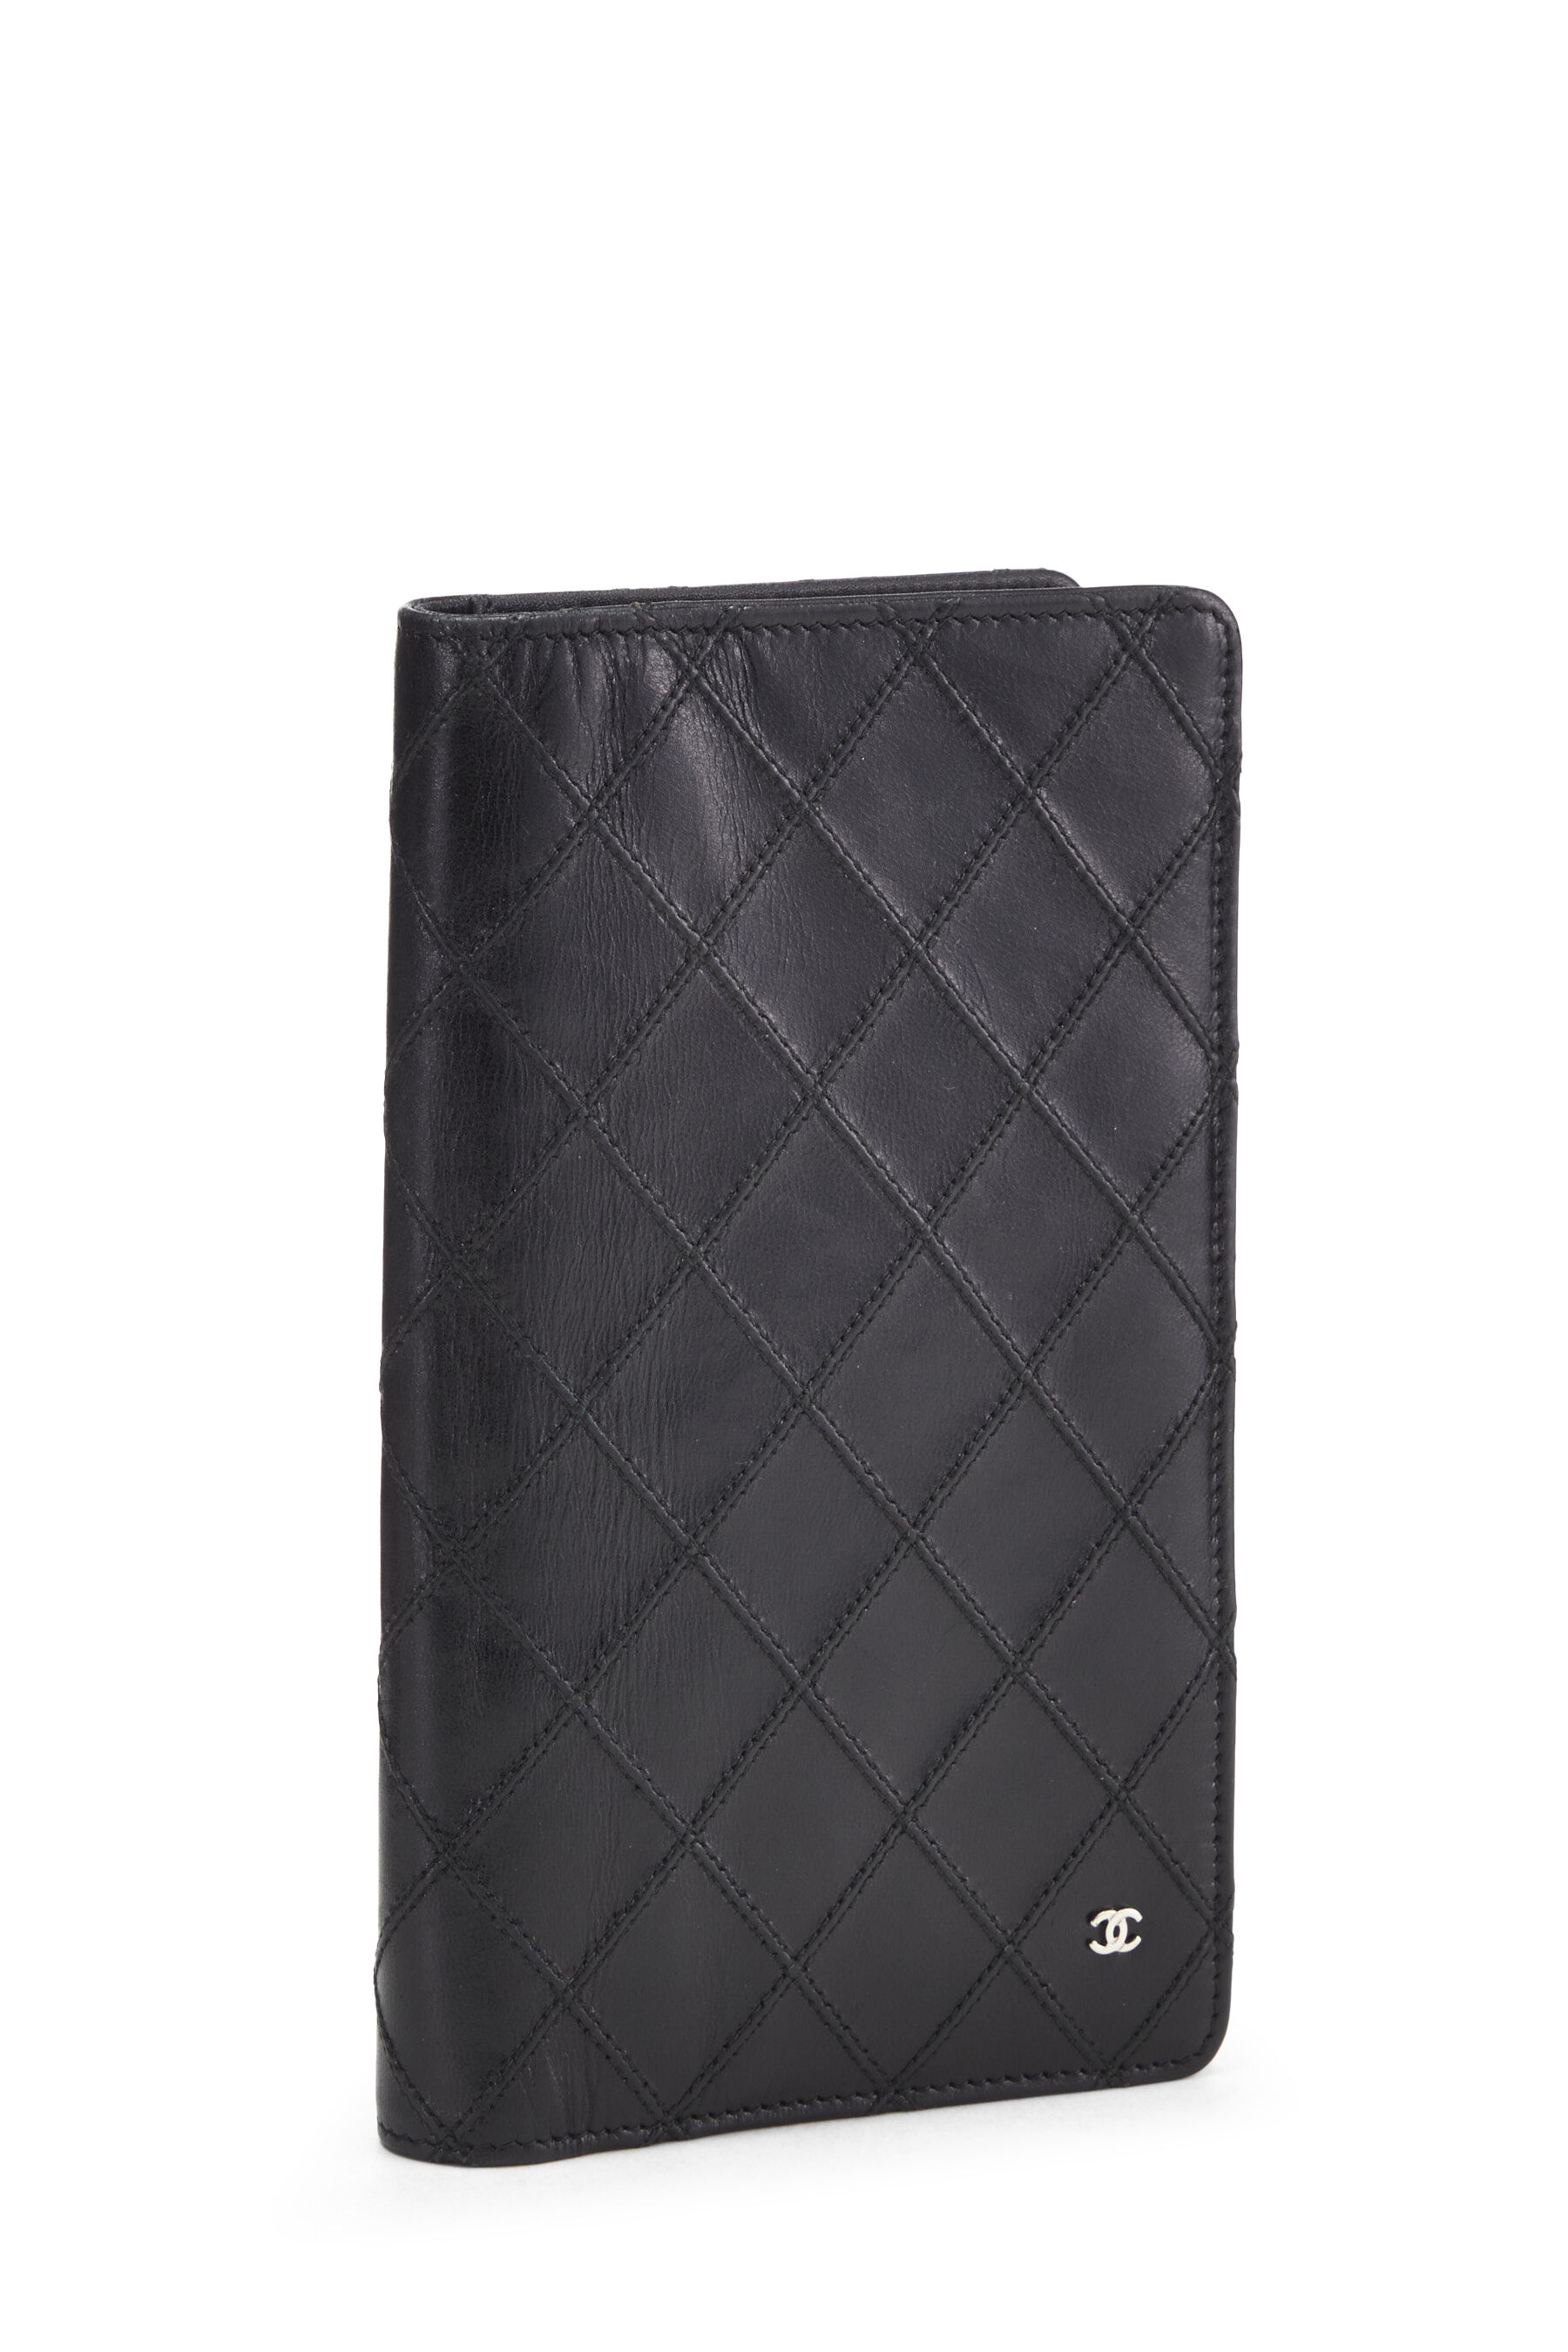 Chanel - Black Lambskin Long Wallet